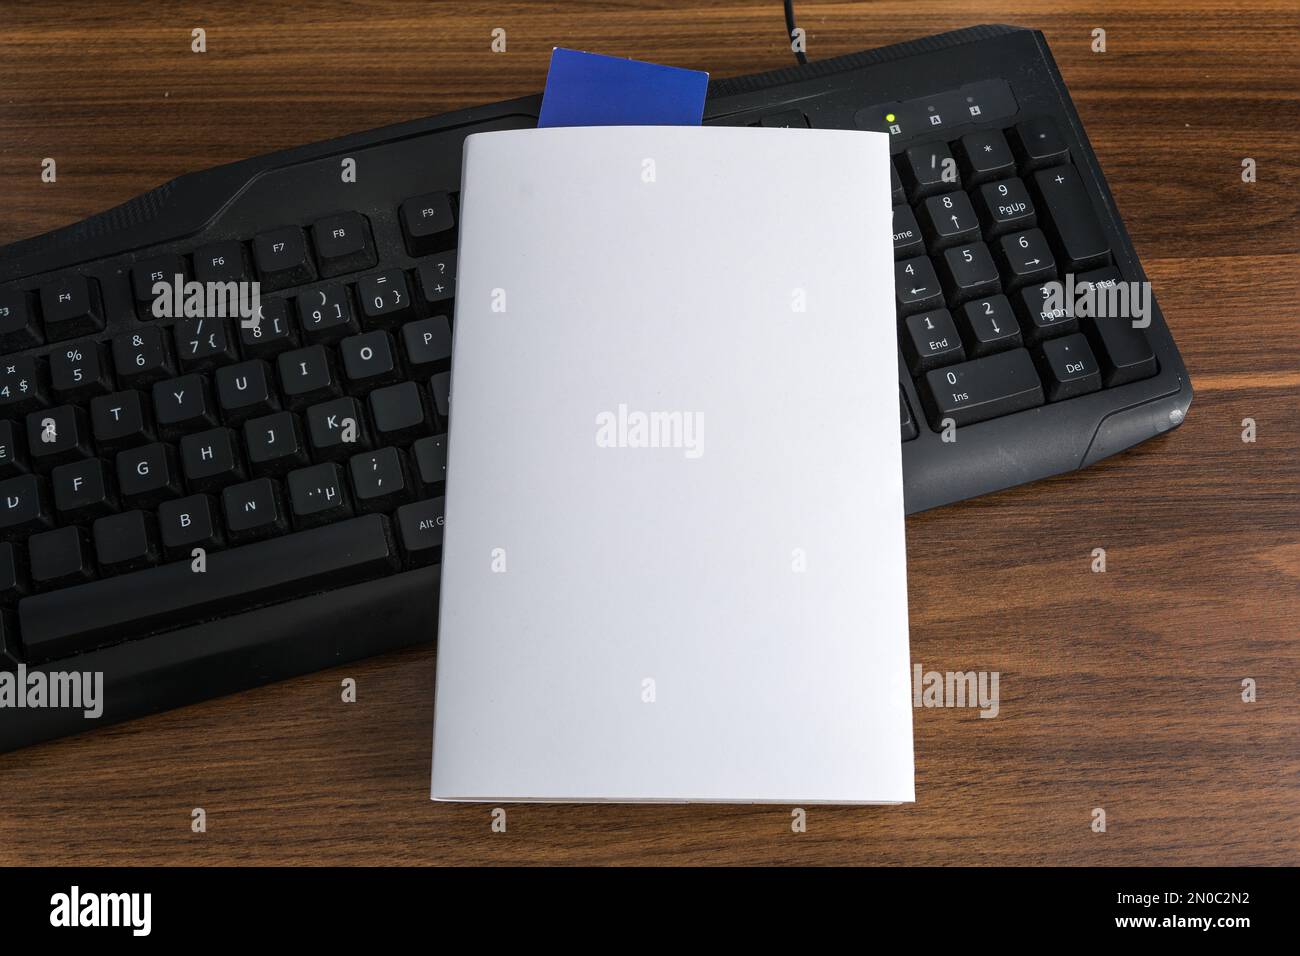 Leere weiße Buchumschlagsvorlage mit blauem Lesezeichen auf der schwarzen Tastatur. Beschneidungspfad. Stockfoto